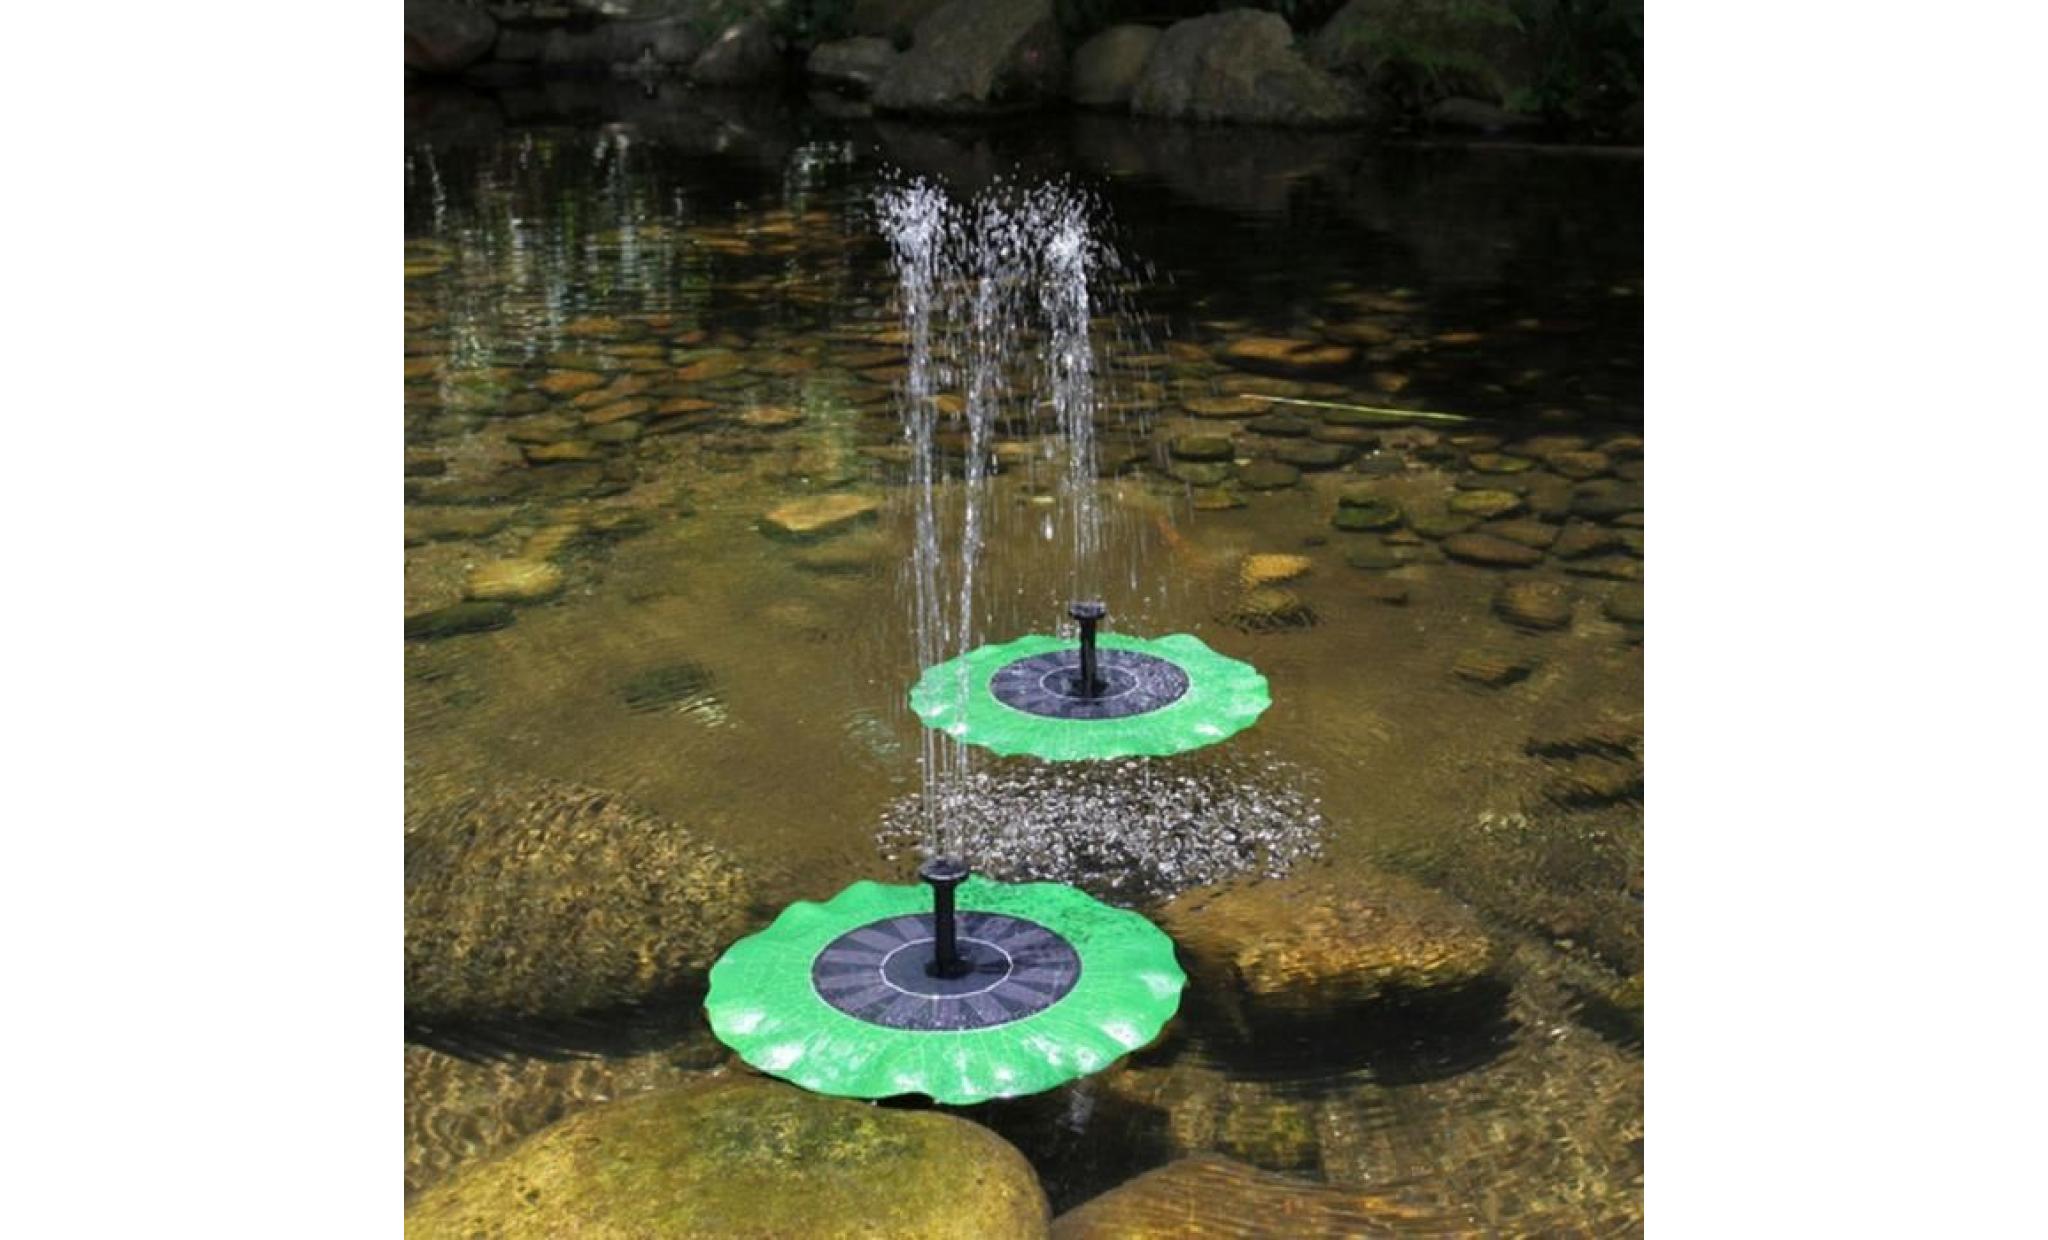 iportan® flottant bird bath solaire fontaine de jardin panneau pompe à eau kit piscine étang noir_25 pas cher